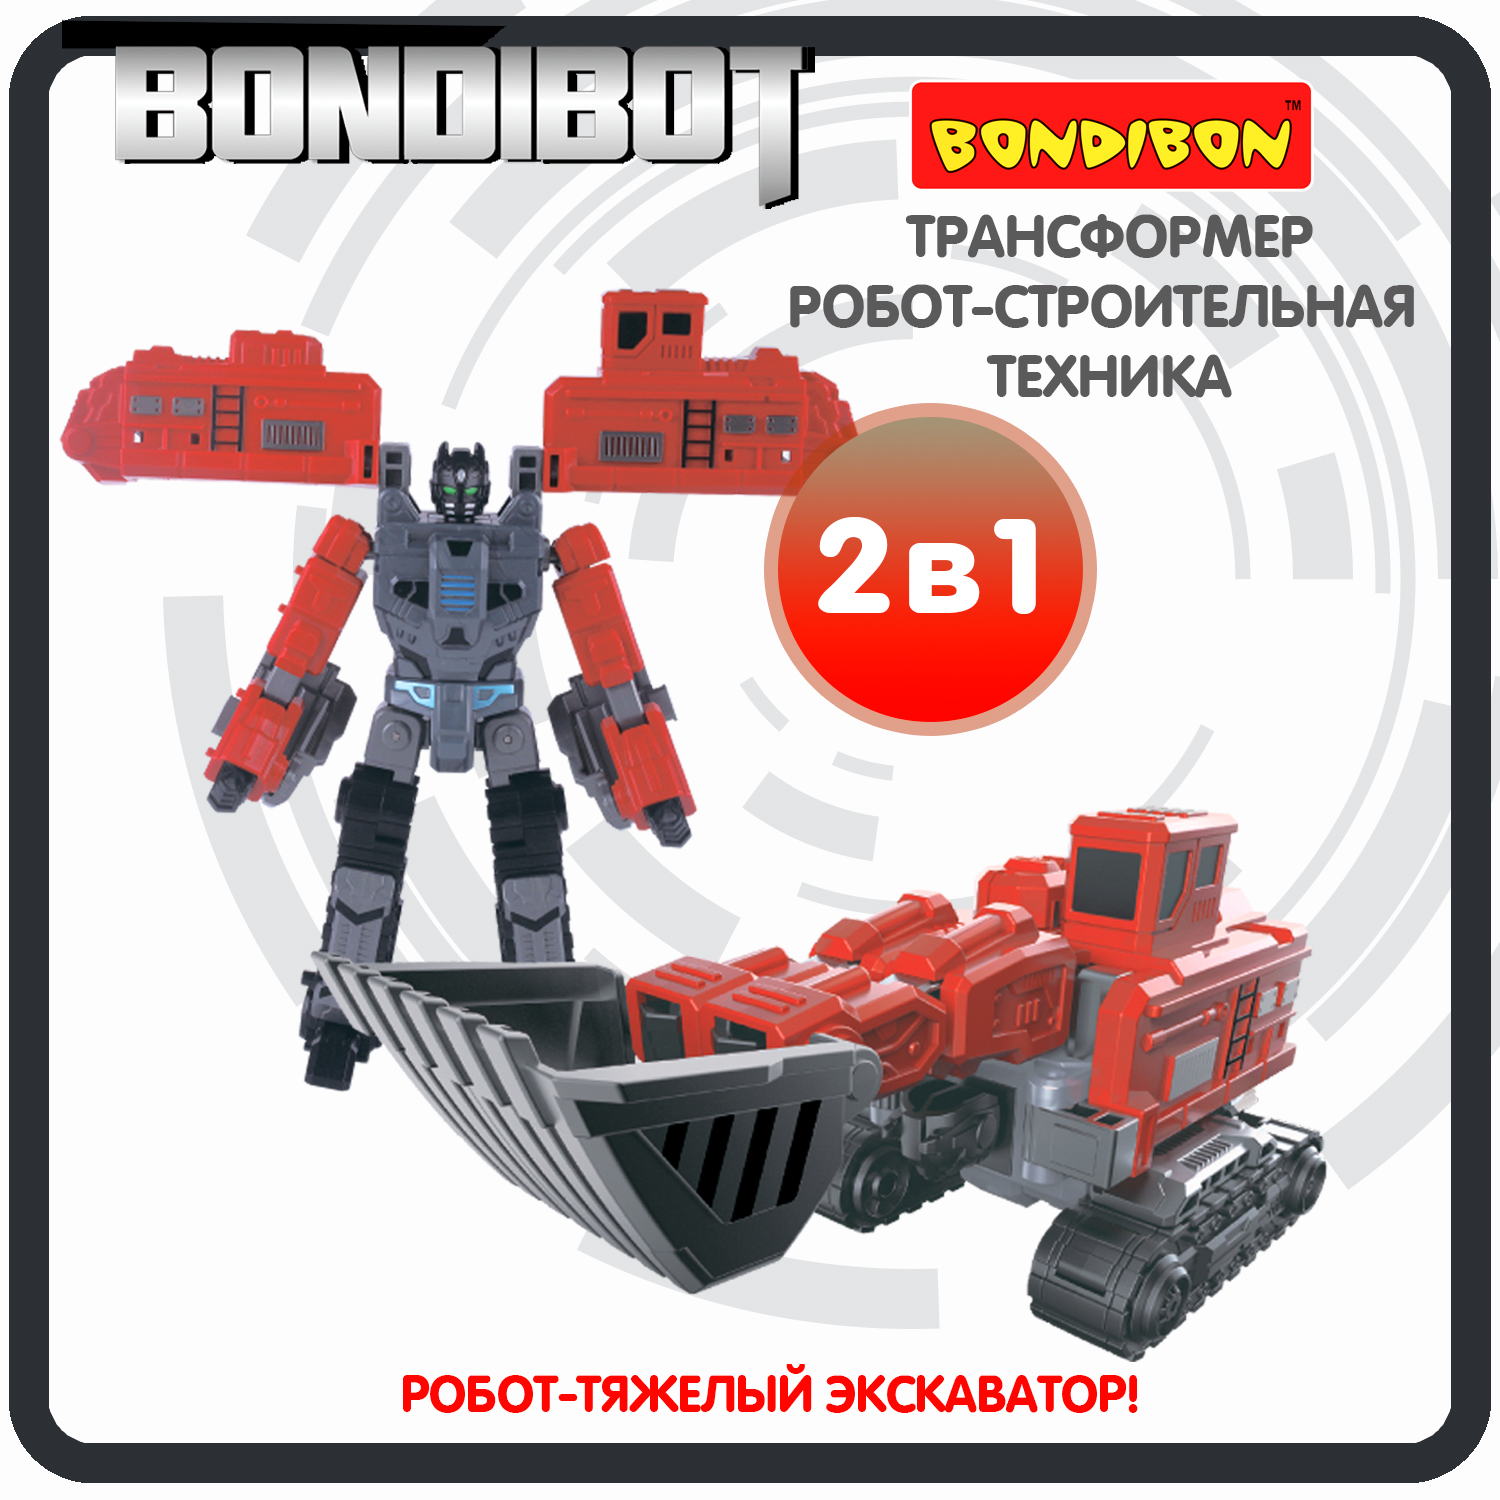 Трансформер робот-строительная техника, 2в1 BONDIBOT Bondibon, тяжёлый экскаватор / ВВ6057 робот трансформер 2в1 bondibon bondibot машинка экскаватор погрузчик